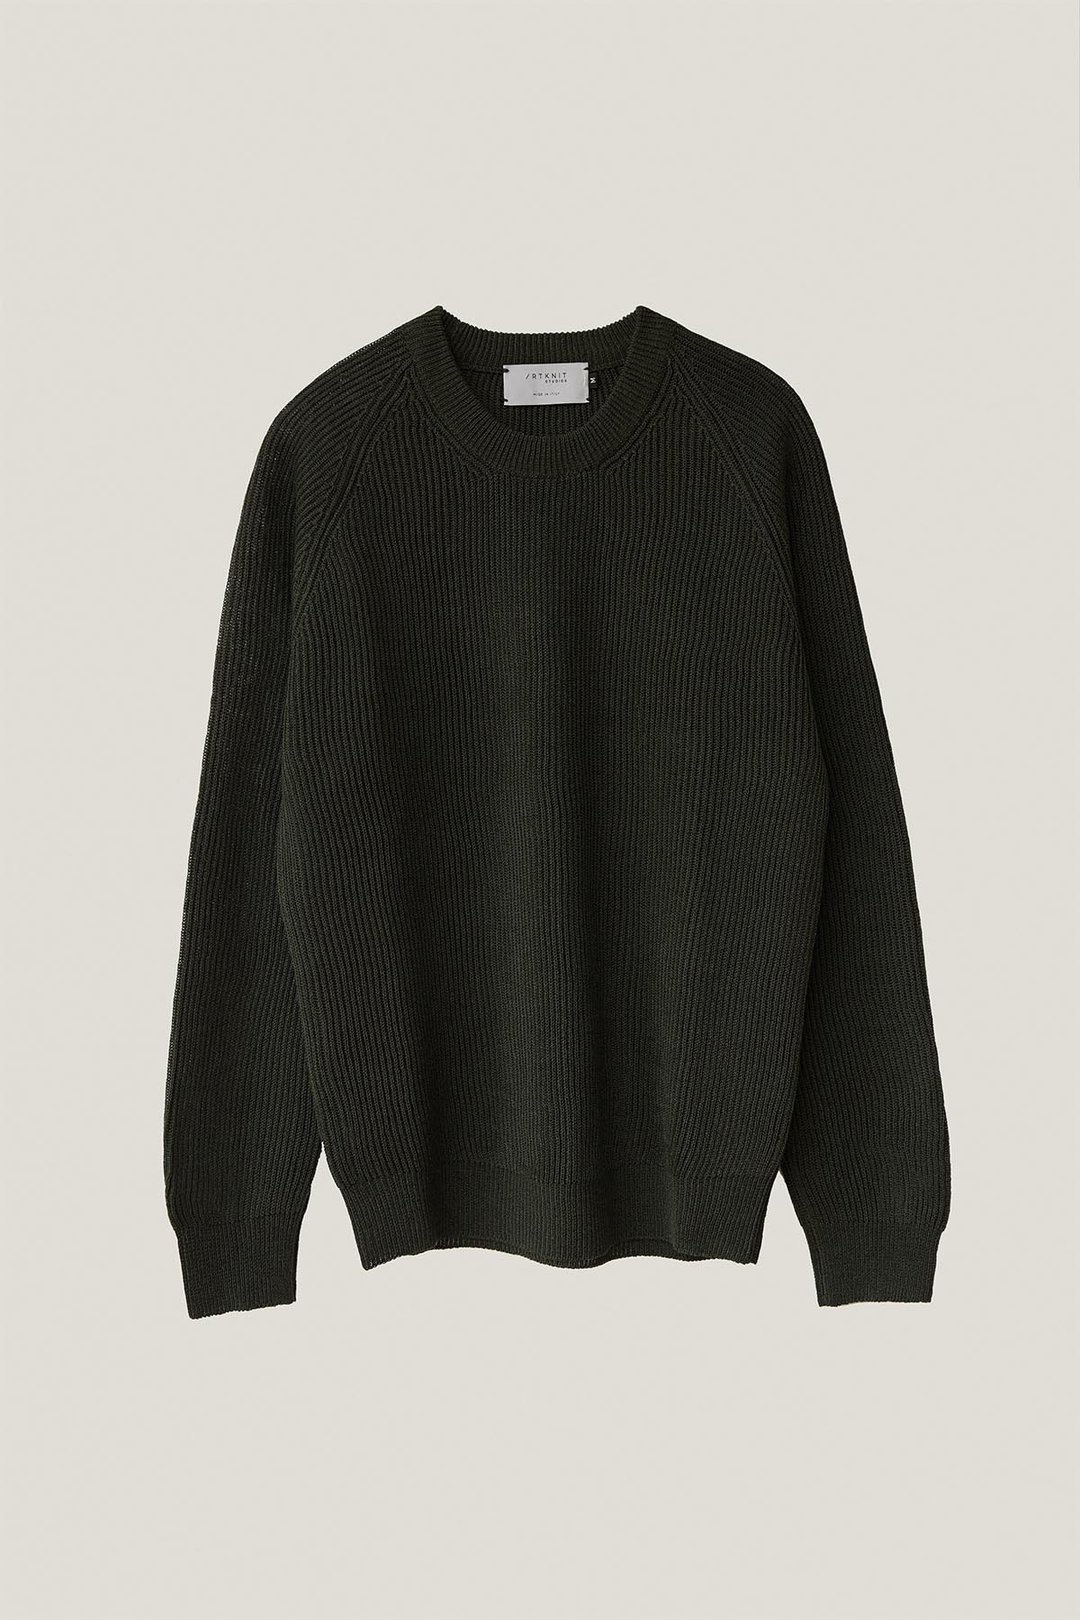 donkergroene trui trends 2021 sweater